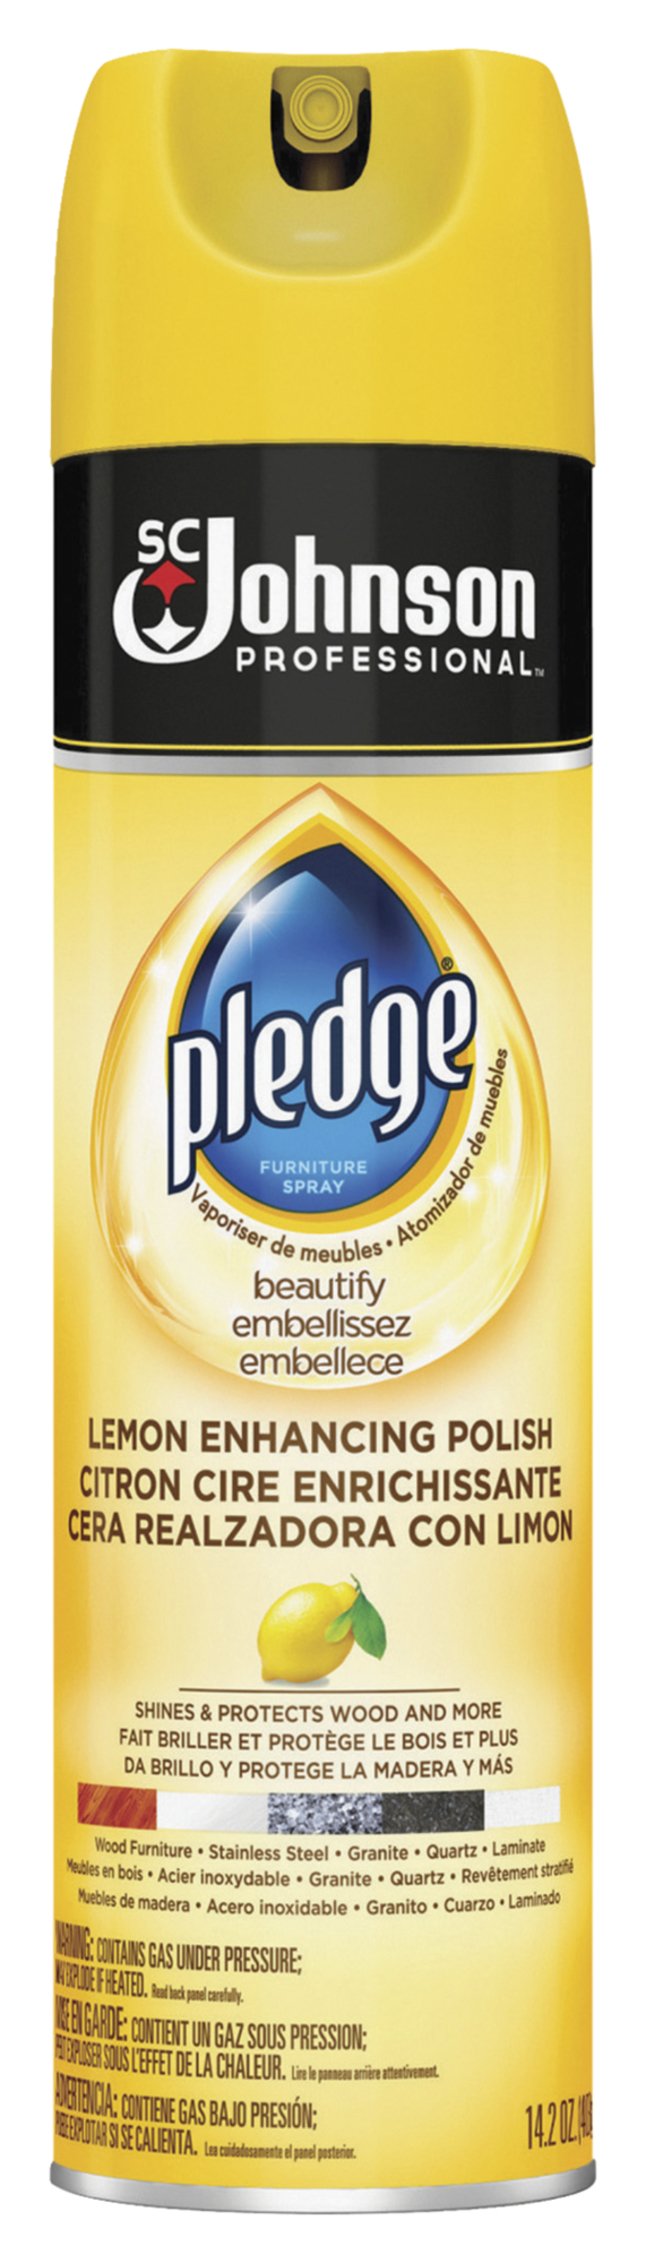 Pledge Lemon Enhancing Polish, Spray, Item Number 2027236